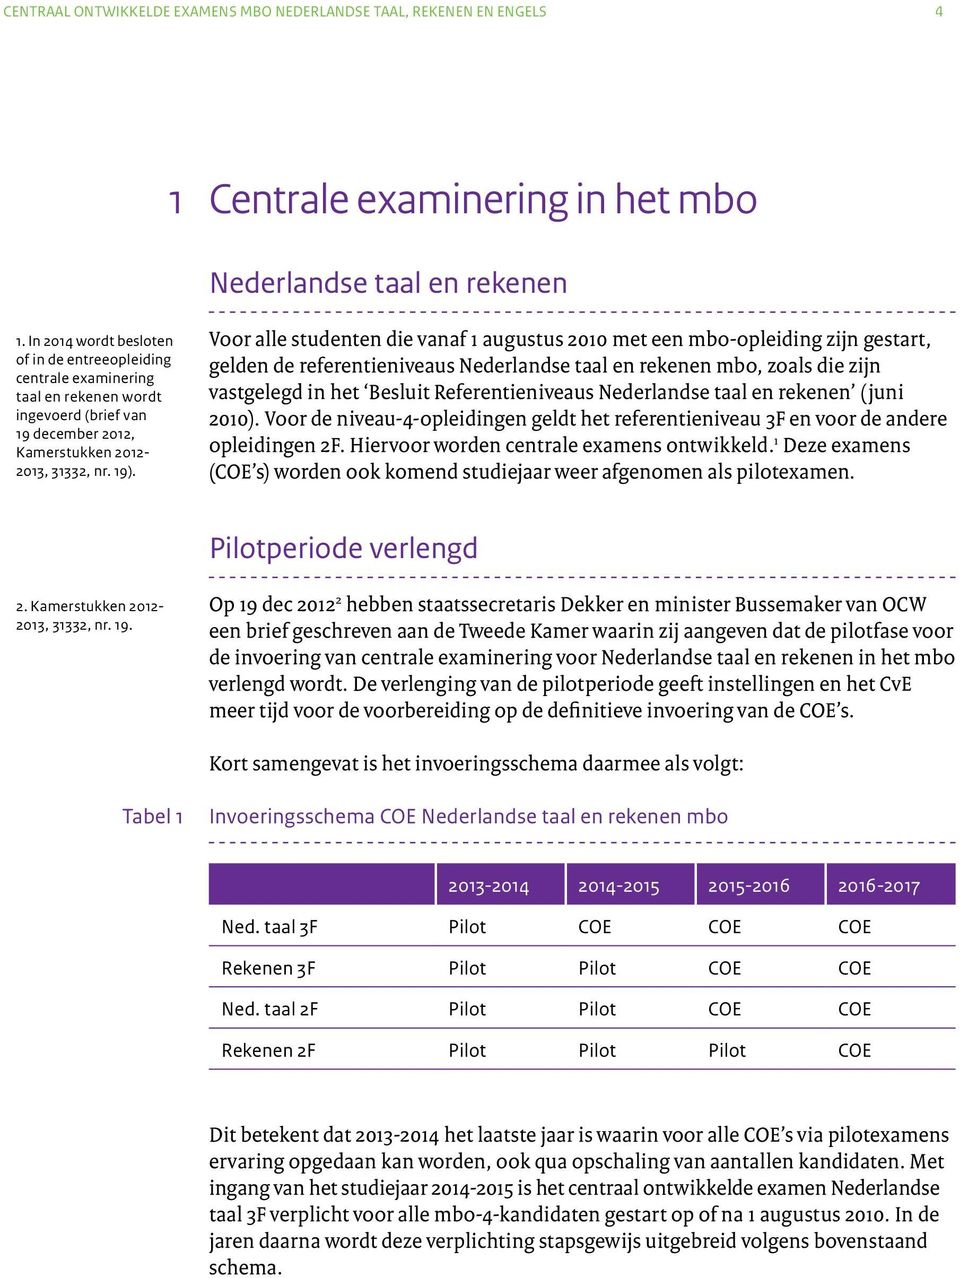 Voor alle studenten die vanaf 1 augustus 2010 met een mbo-opleiding zijn gestart, gelden de referentieniveaus Nederlandse taal en rekenen mbo, zoals die zijn vastgelegd in het Besluit